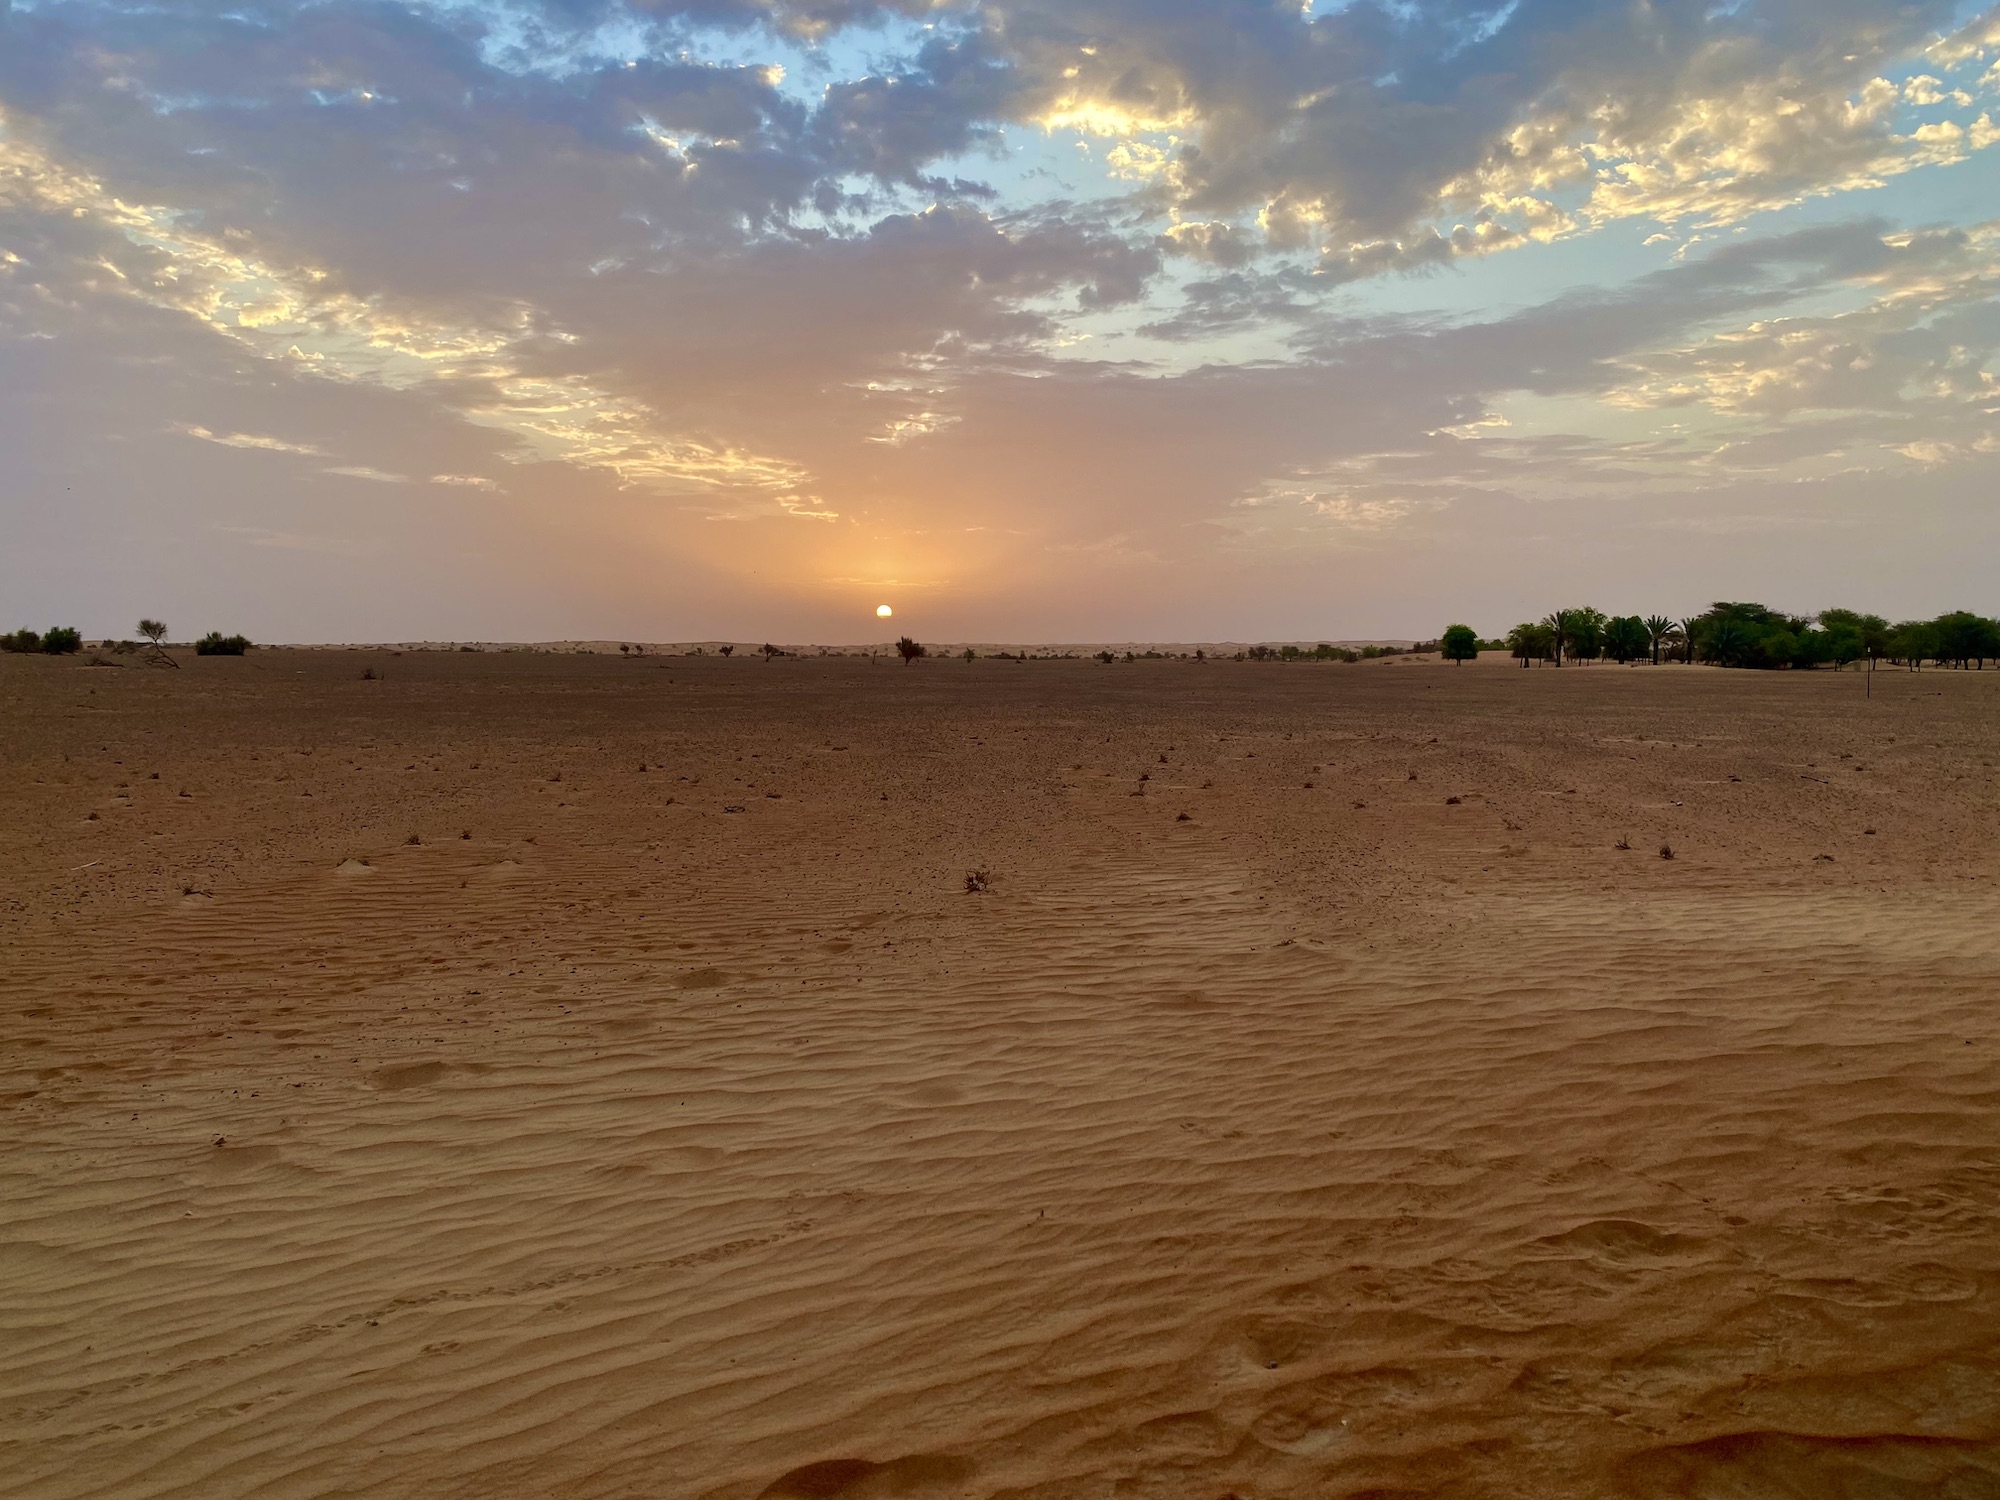 Sunrise over Dubai desert